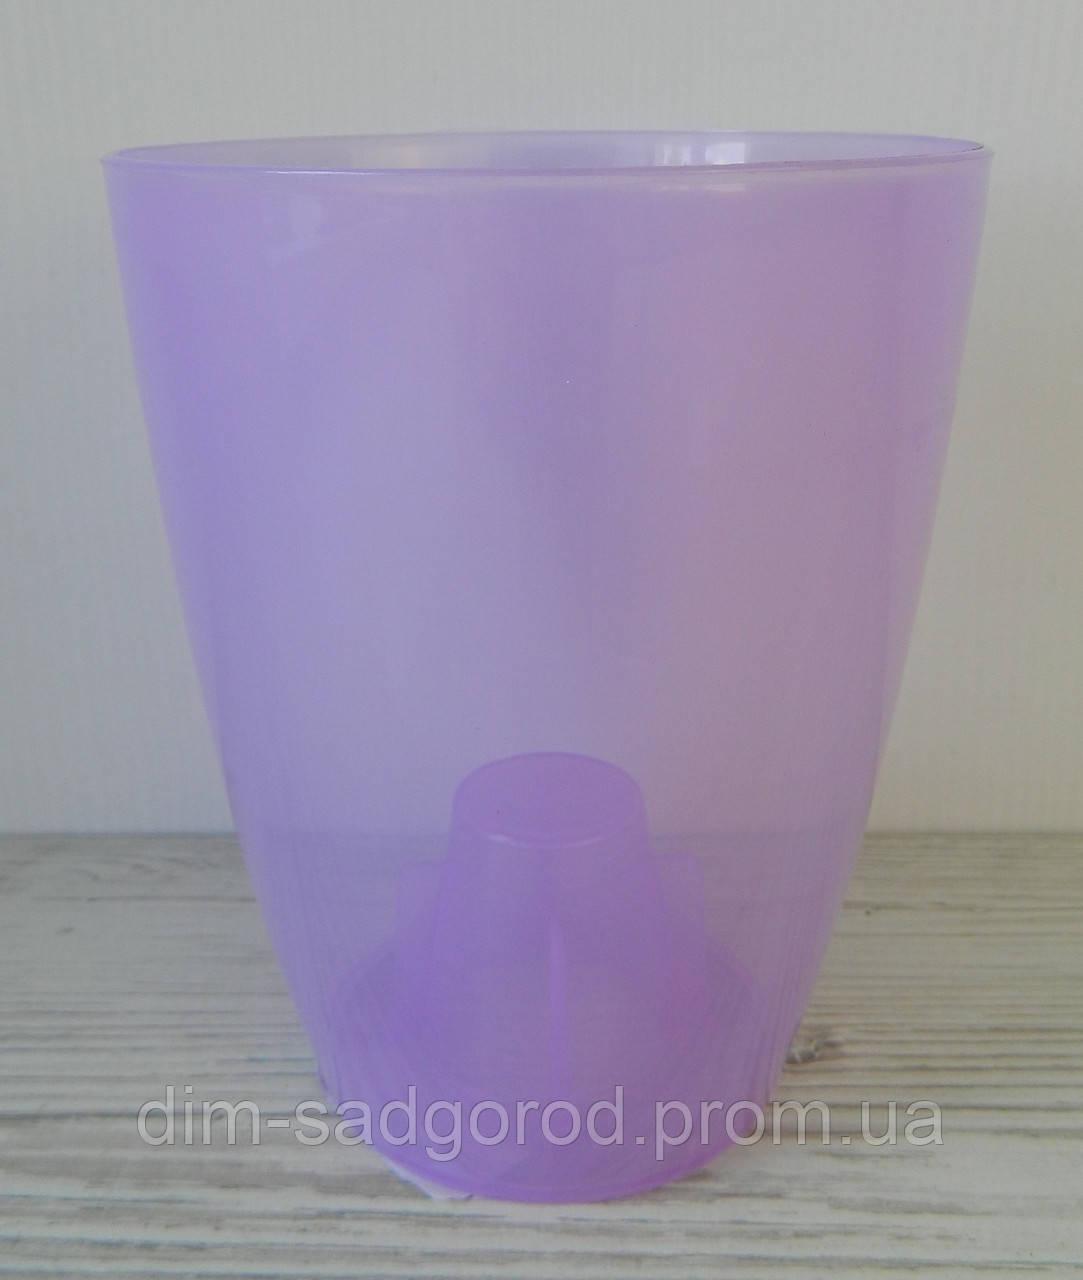 Пластикове кашпо для орхідеї матове фіолетове коубі d16см